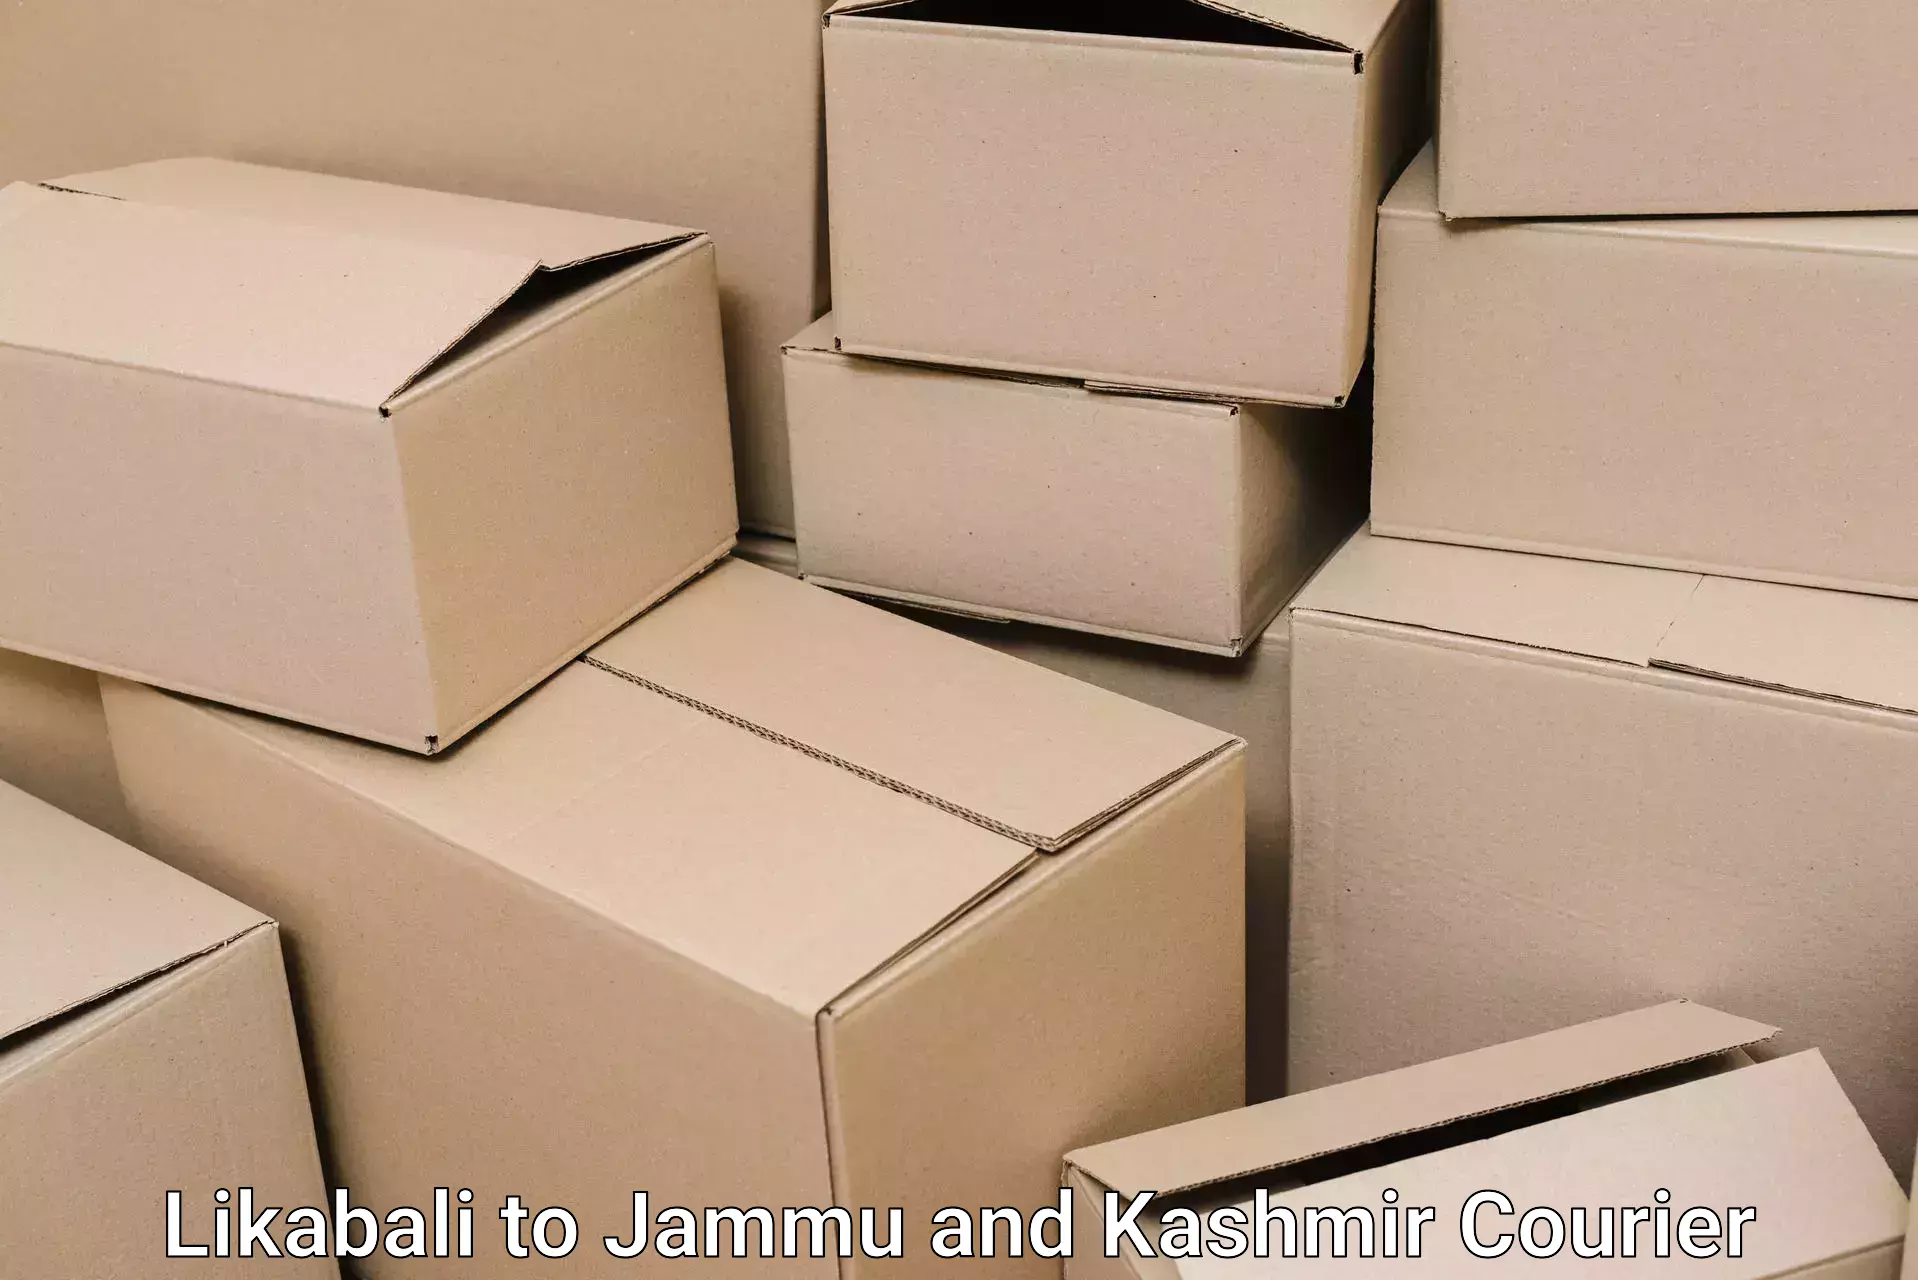 Local home movers Likabali to Jammu and Kashmir